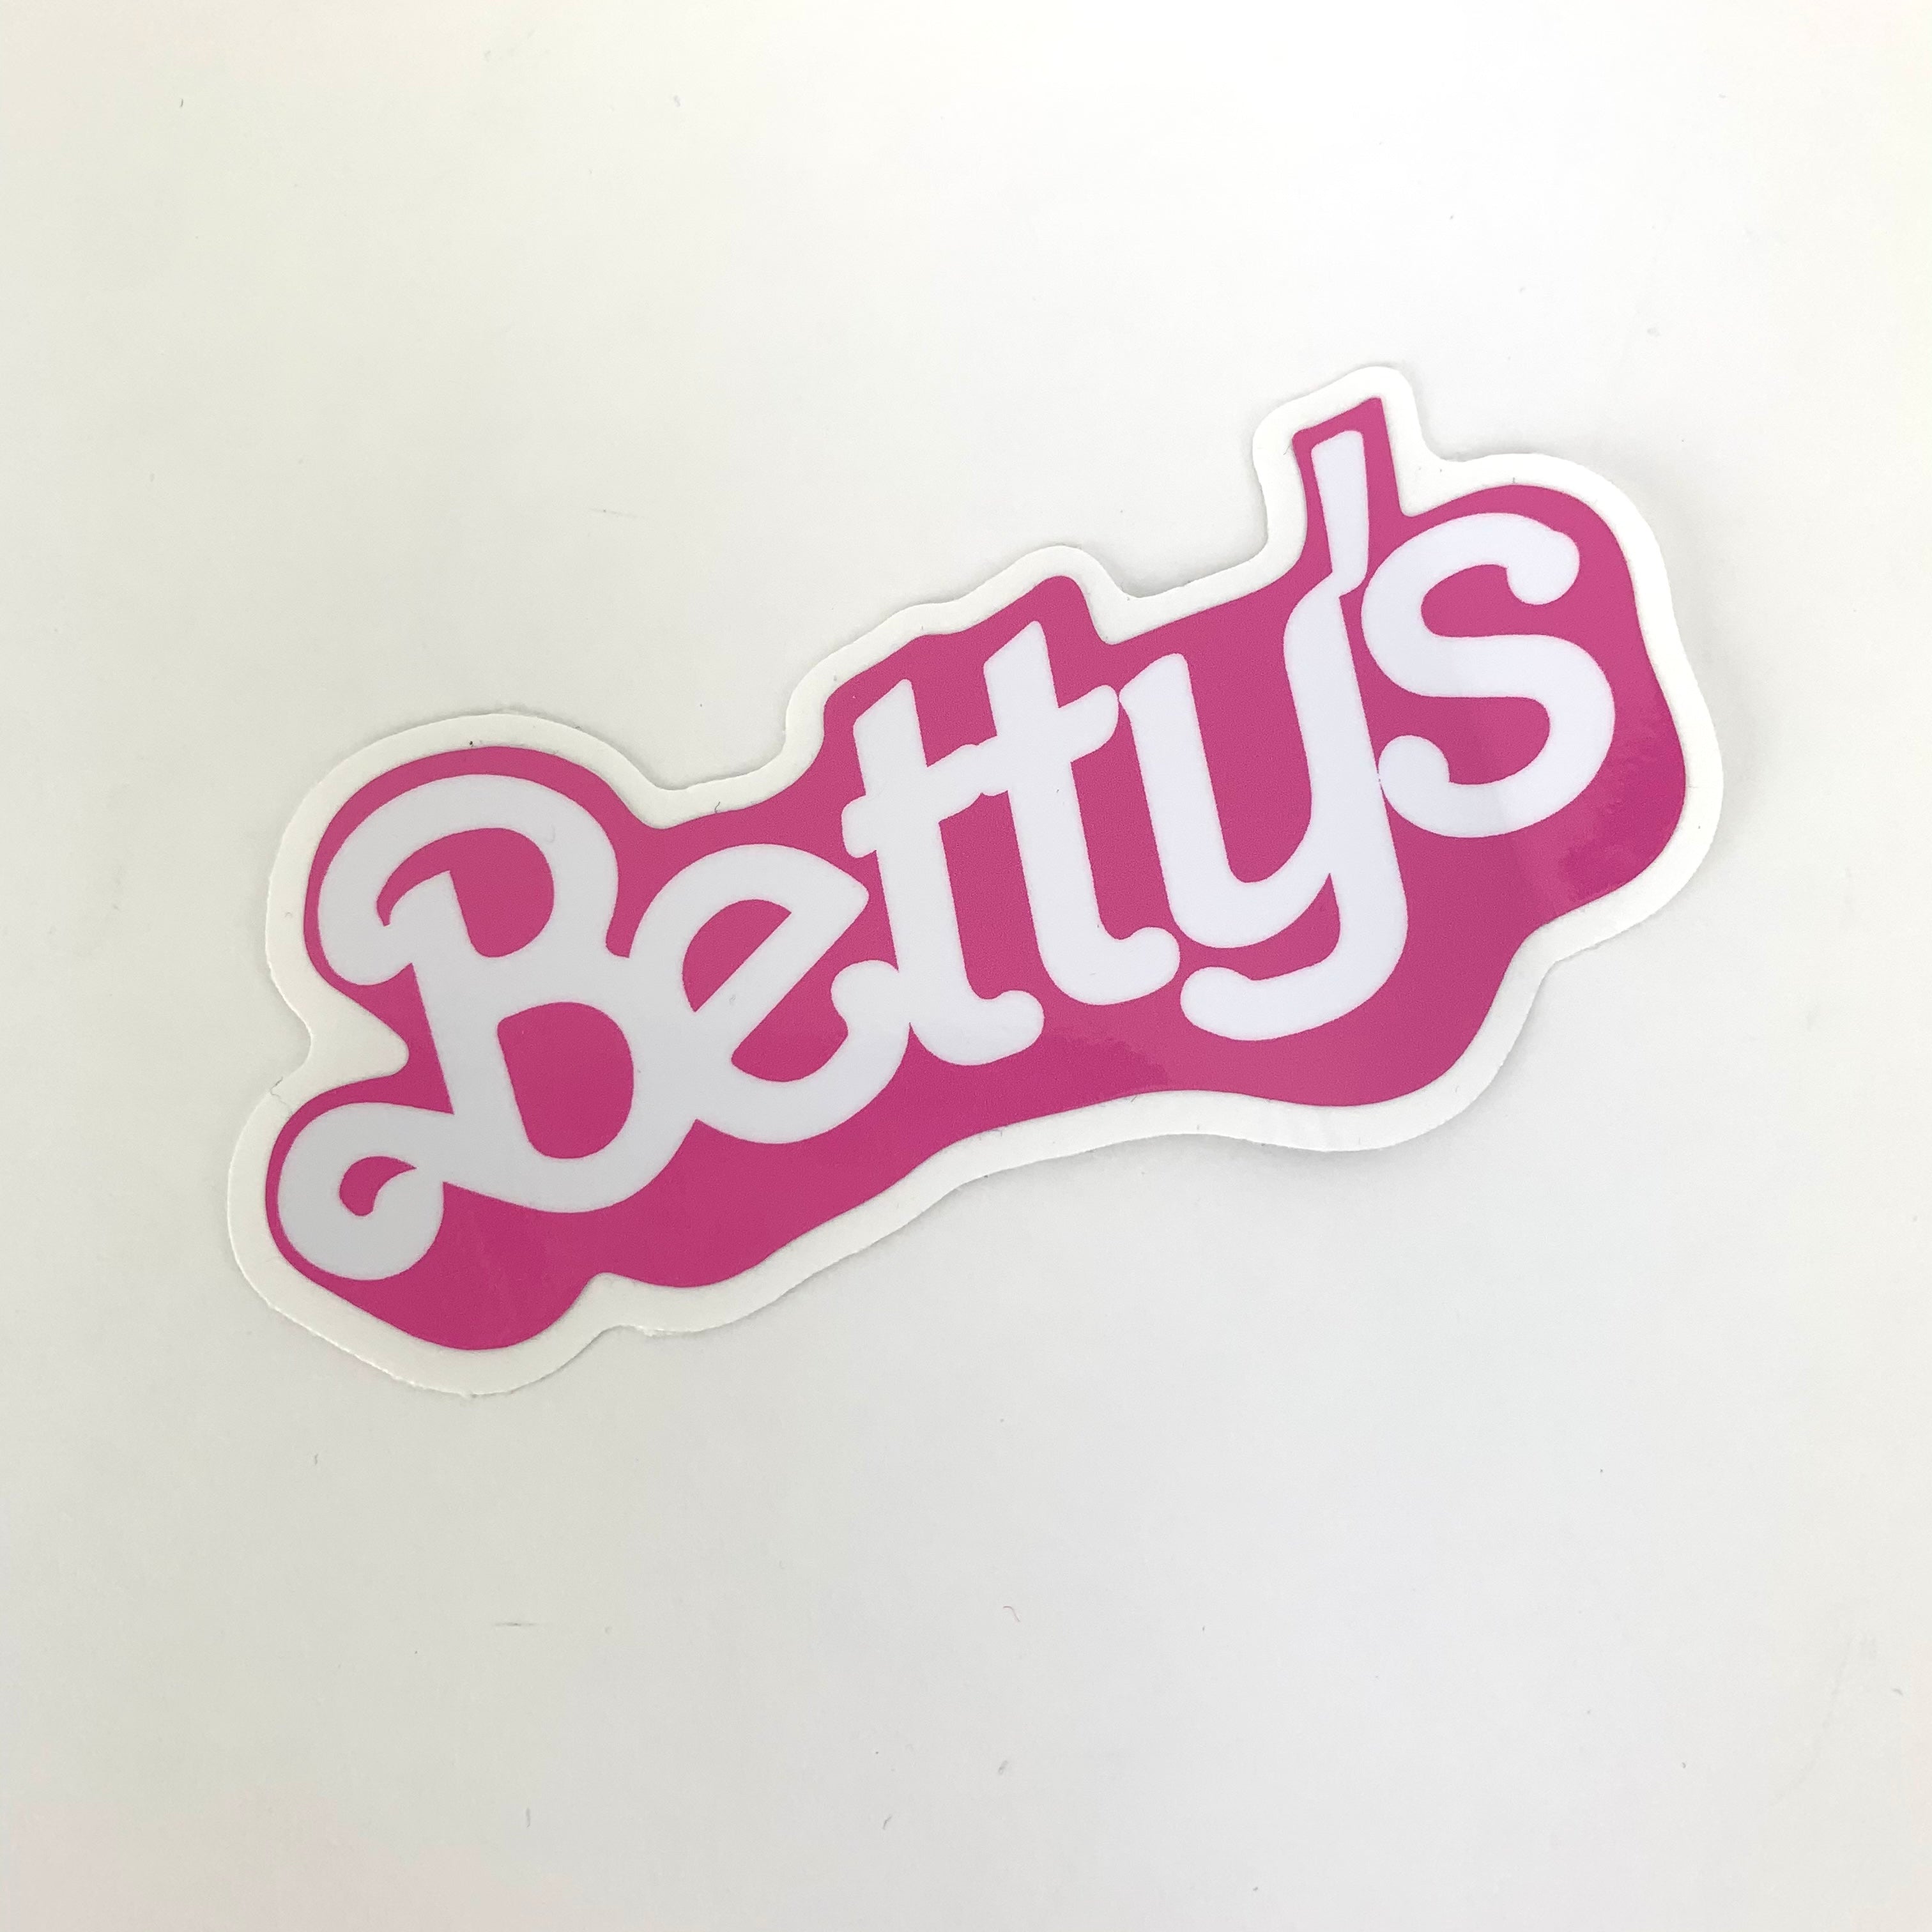 Malibu Betty Sticker